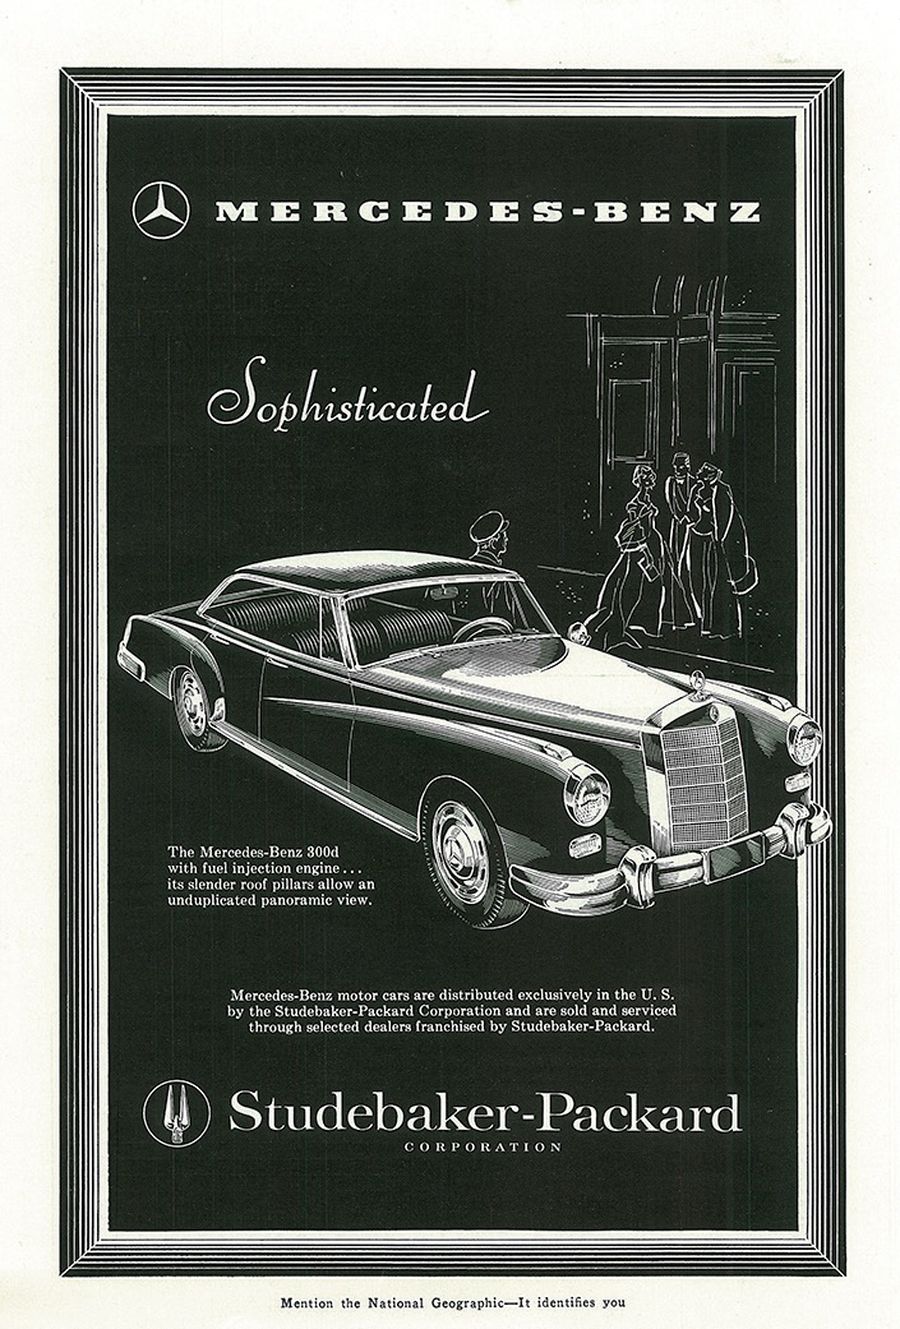 Twenty Five Years Of Mercedes Benz Print Ads Hemmings Motor News